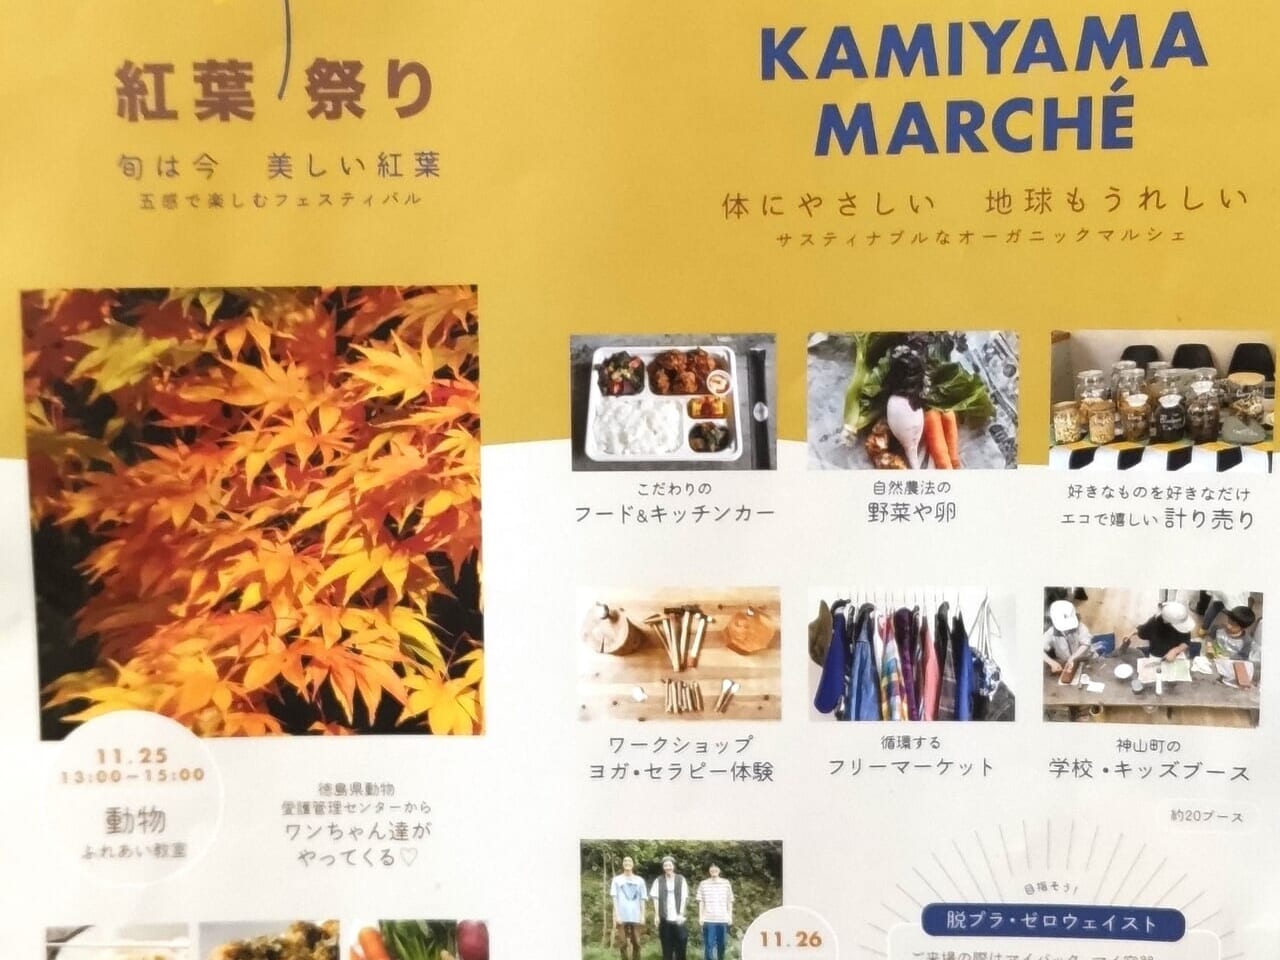 「神山森林公園紅葉祭り・神山マルシェ」のチラシ。画像提供：「情報提供者名は非公開希望」様